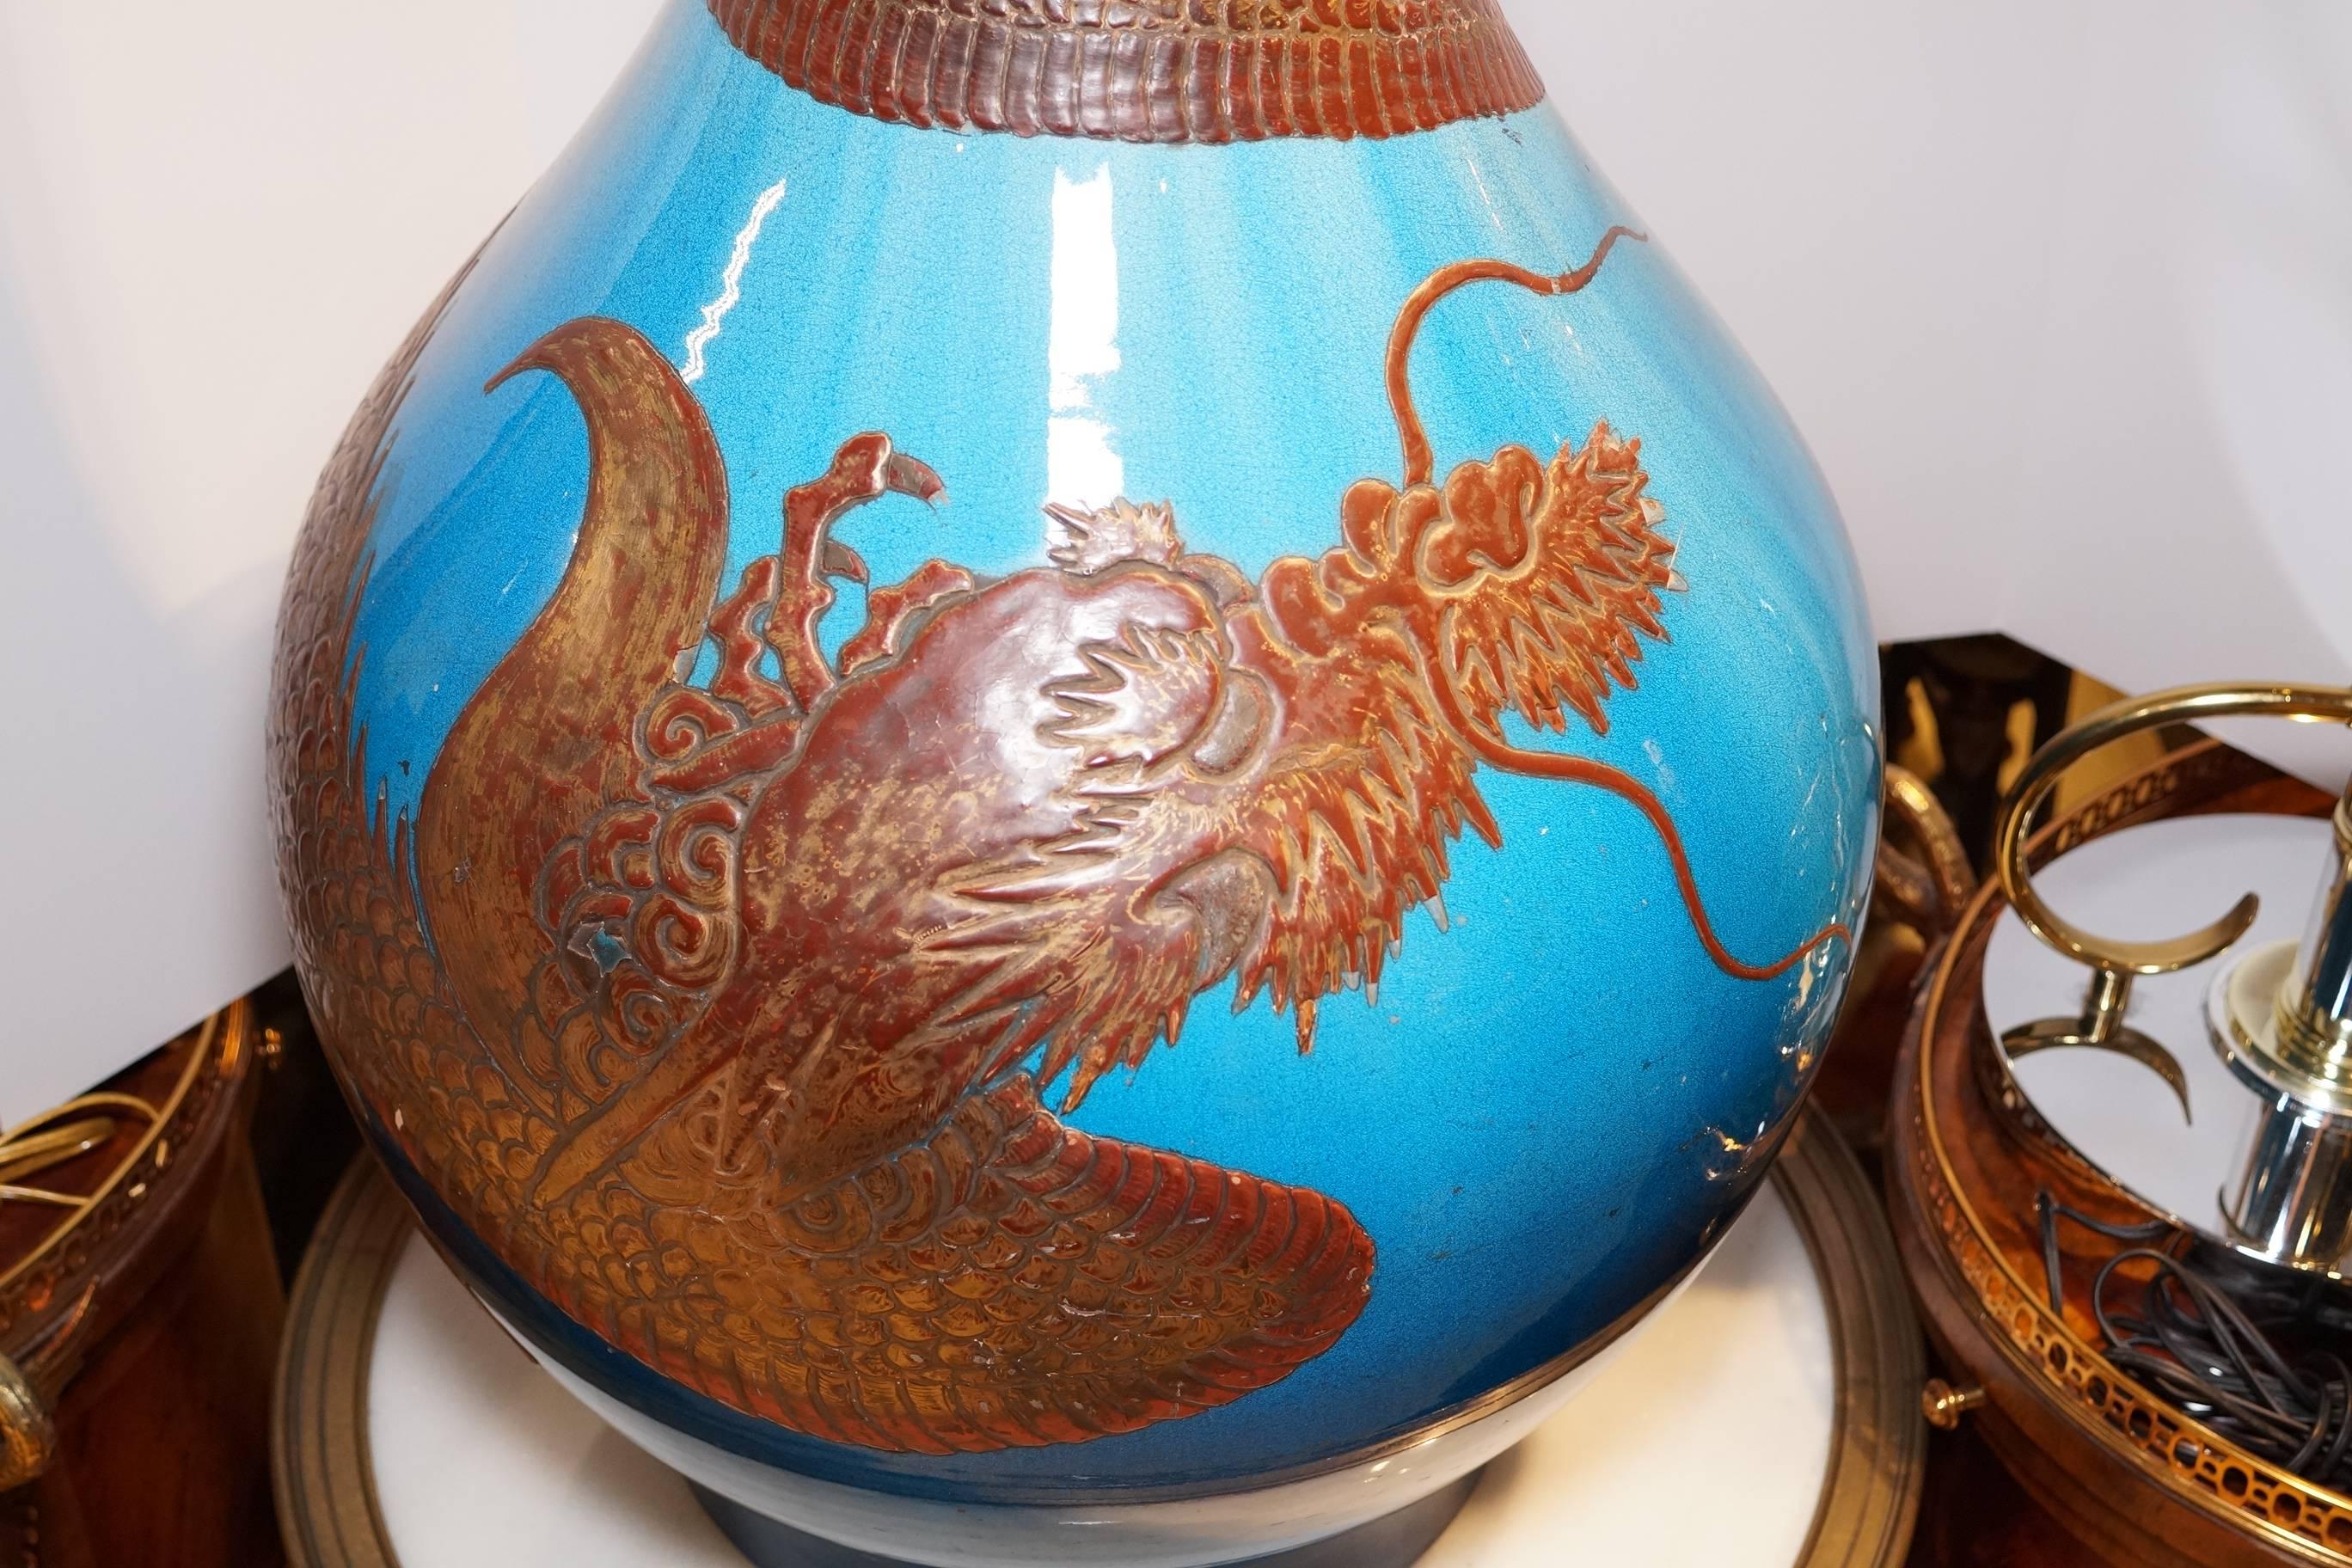 Ceramic Large Japanese Satsuma Vase with Lacquered Dragon Decoration